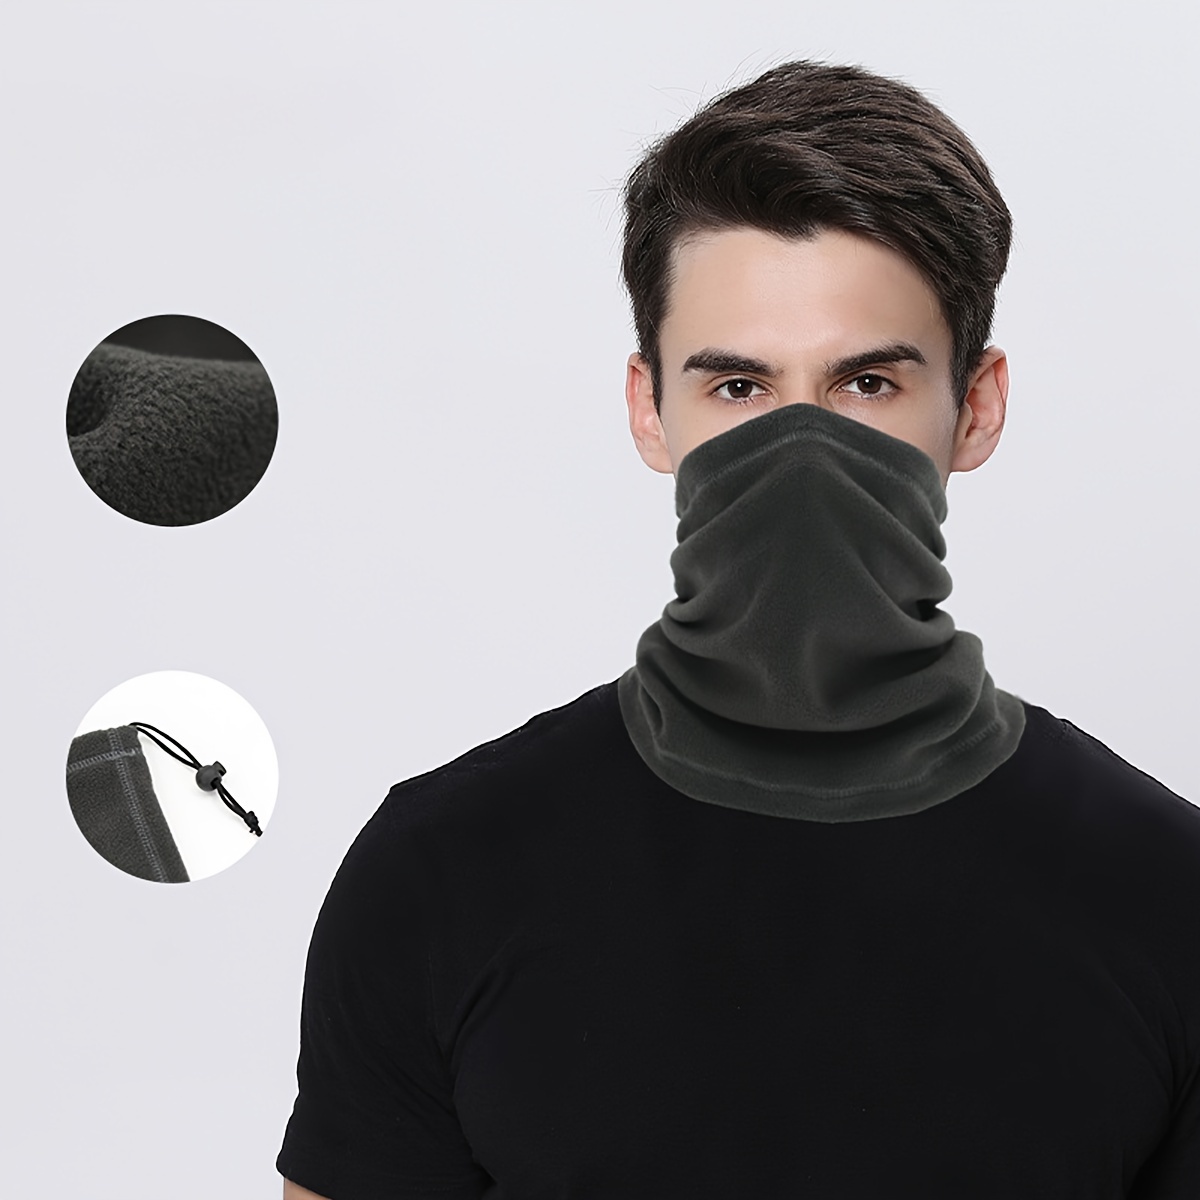 Cagoule Respirant Anti-uv Glace Soie Masques Moto Visage Été Course à pied  Sports Écran Facial Headwrap Moto Accessoires